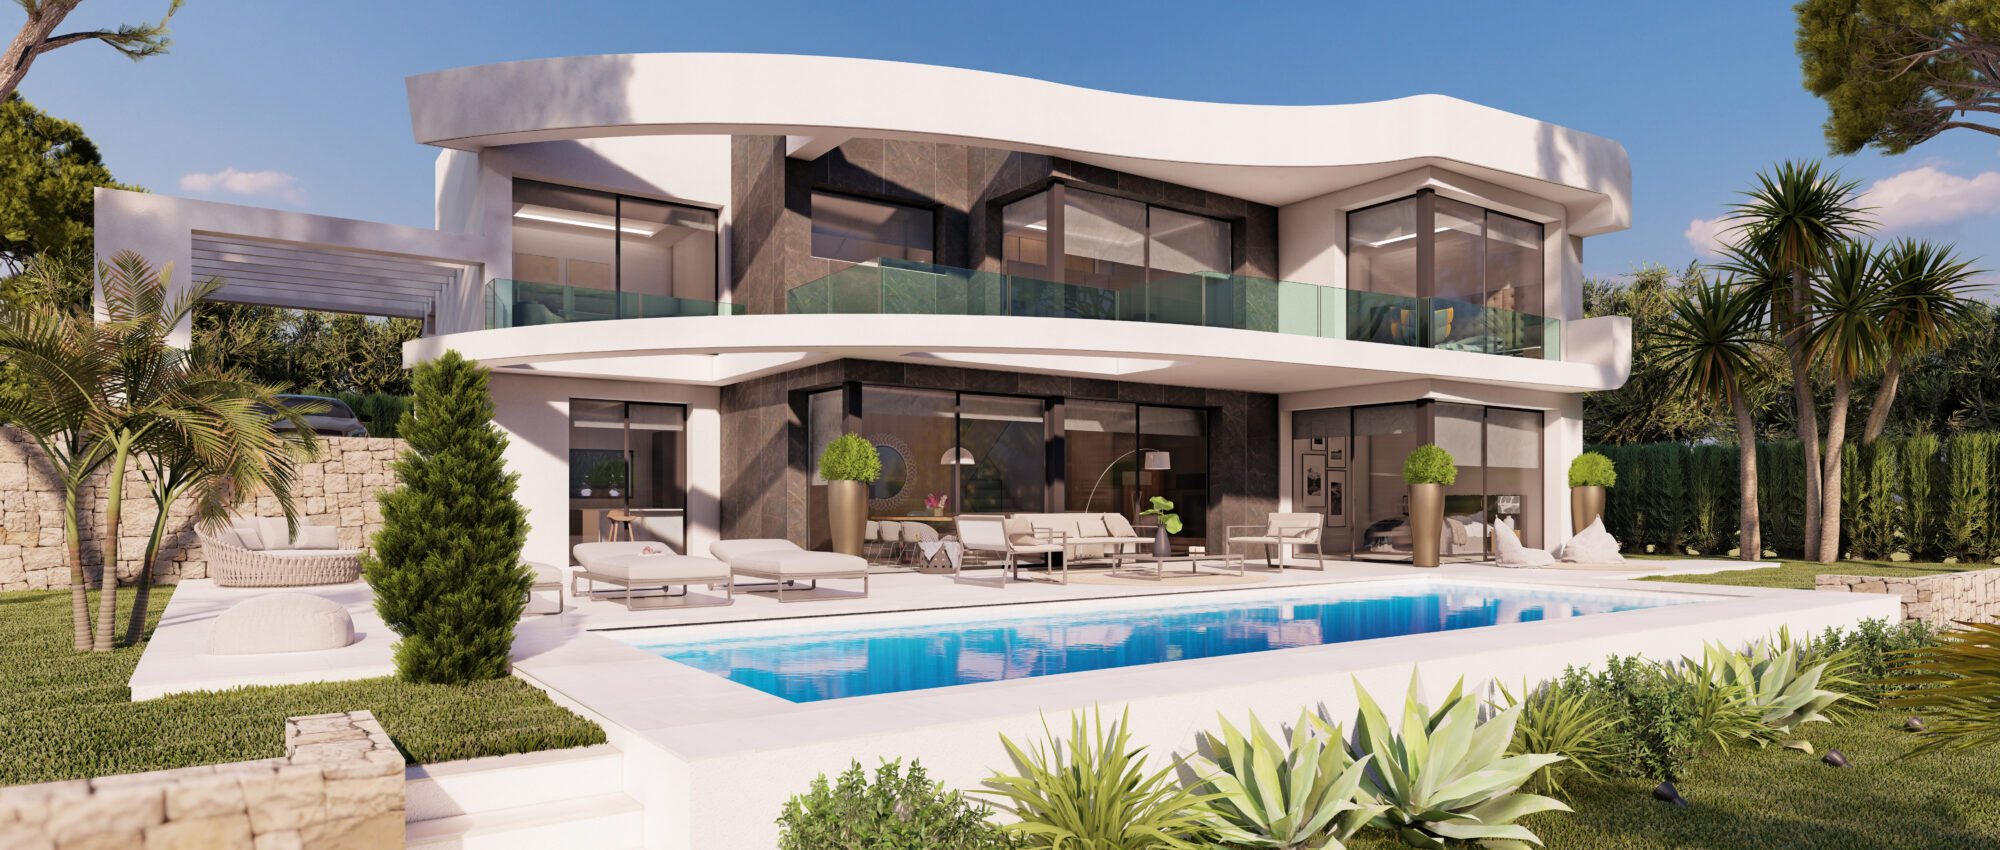 4 Bedroom luxury villa in Calpe